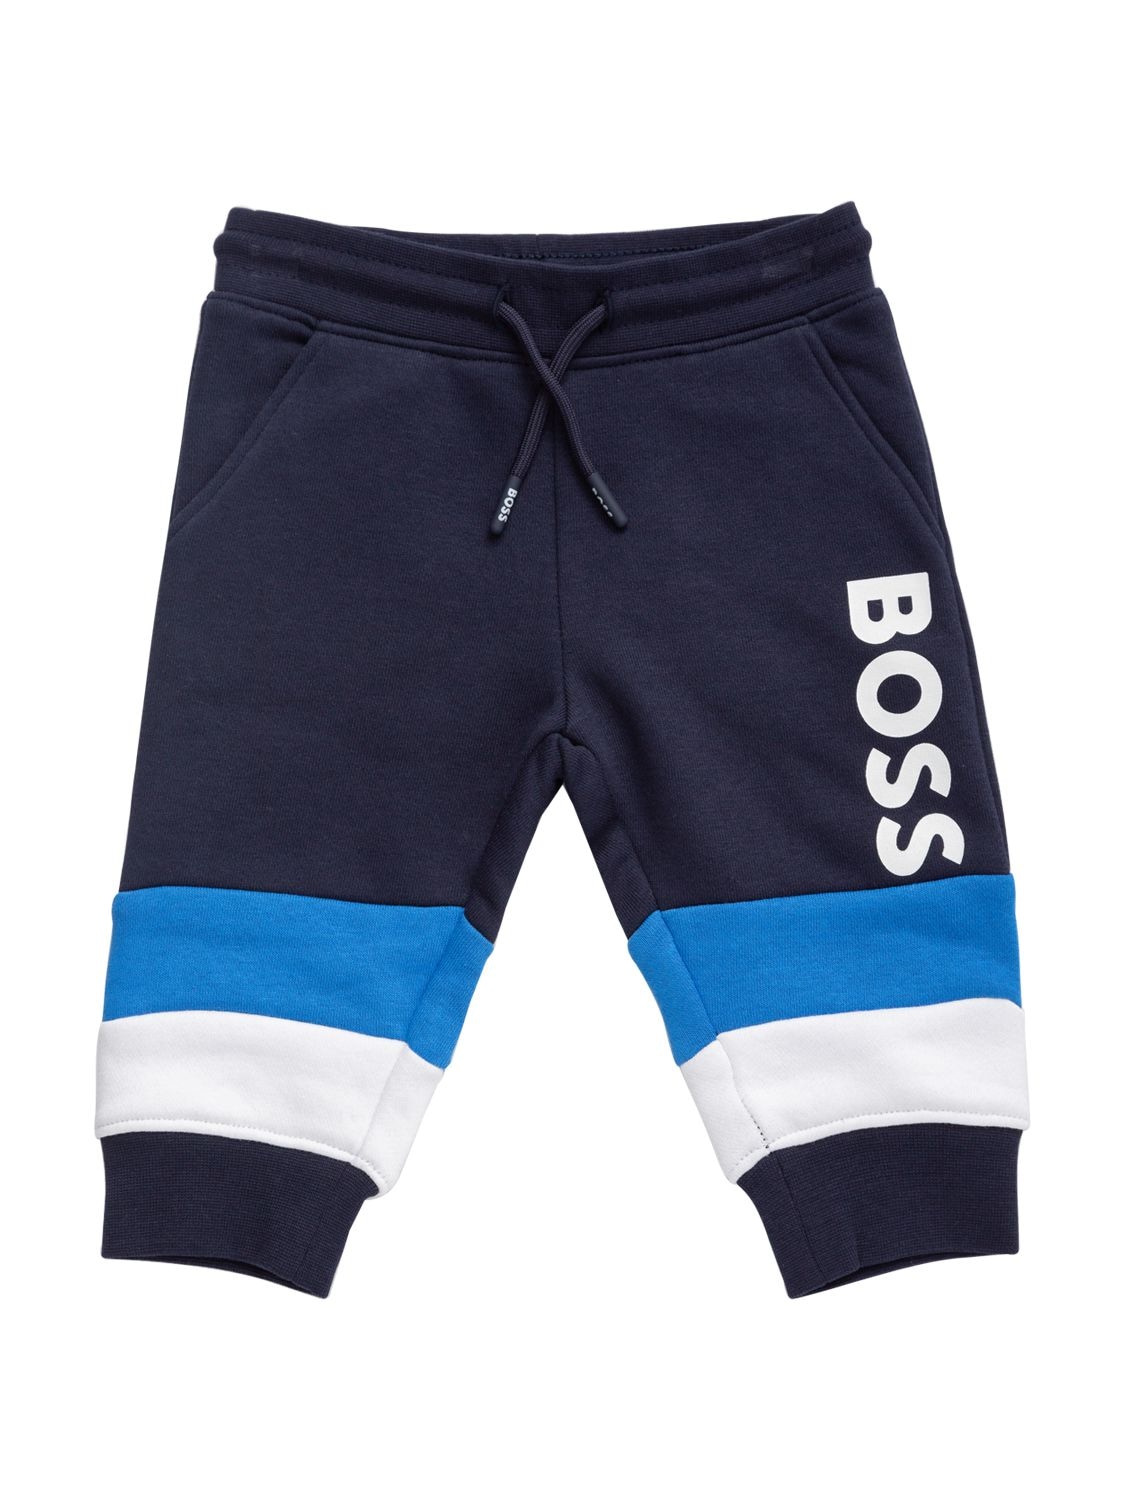 Hugo Boss Kids' Logo印花混棉运动裤 In Navy